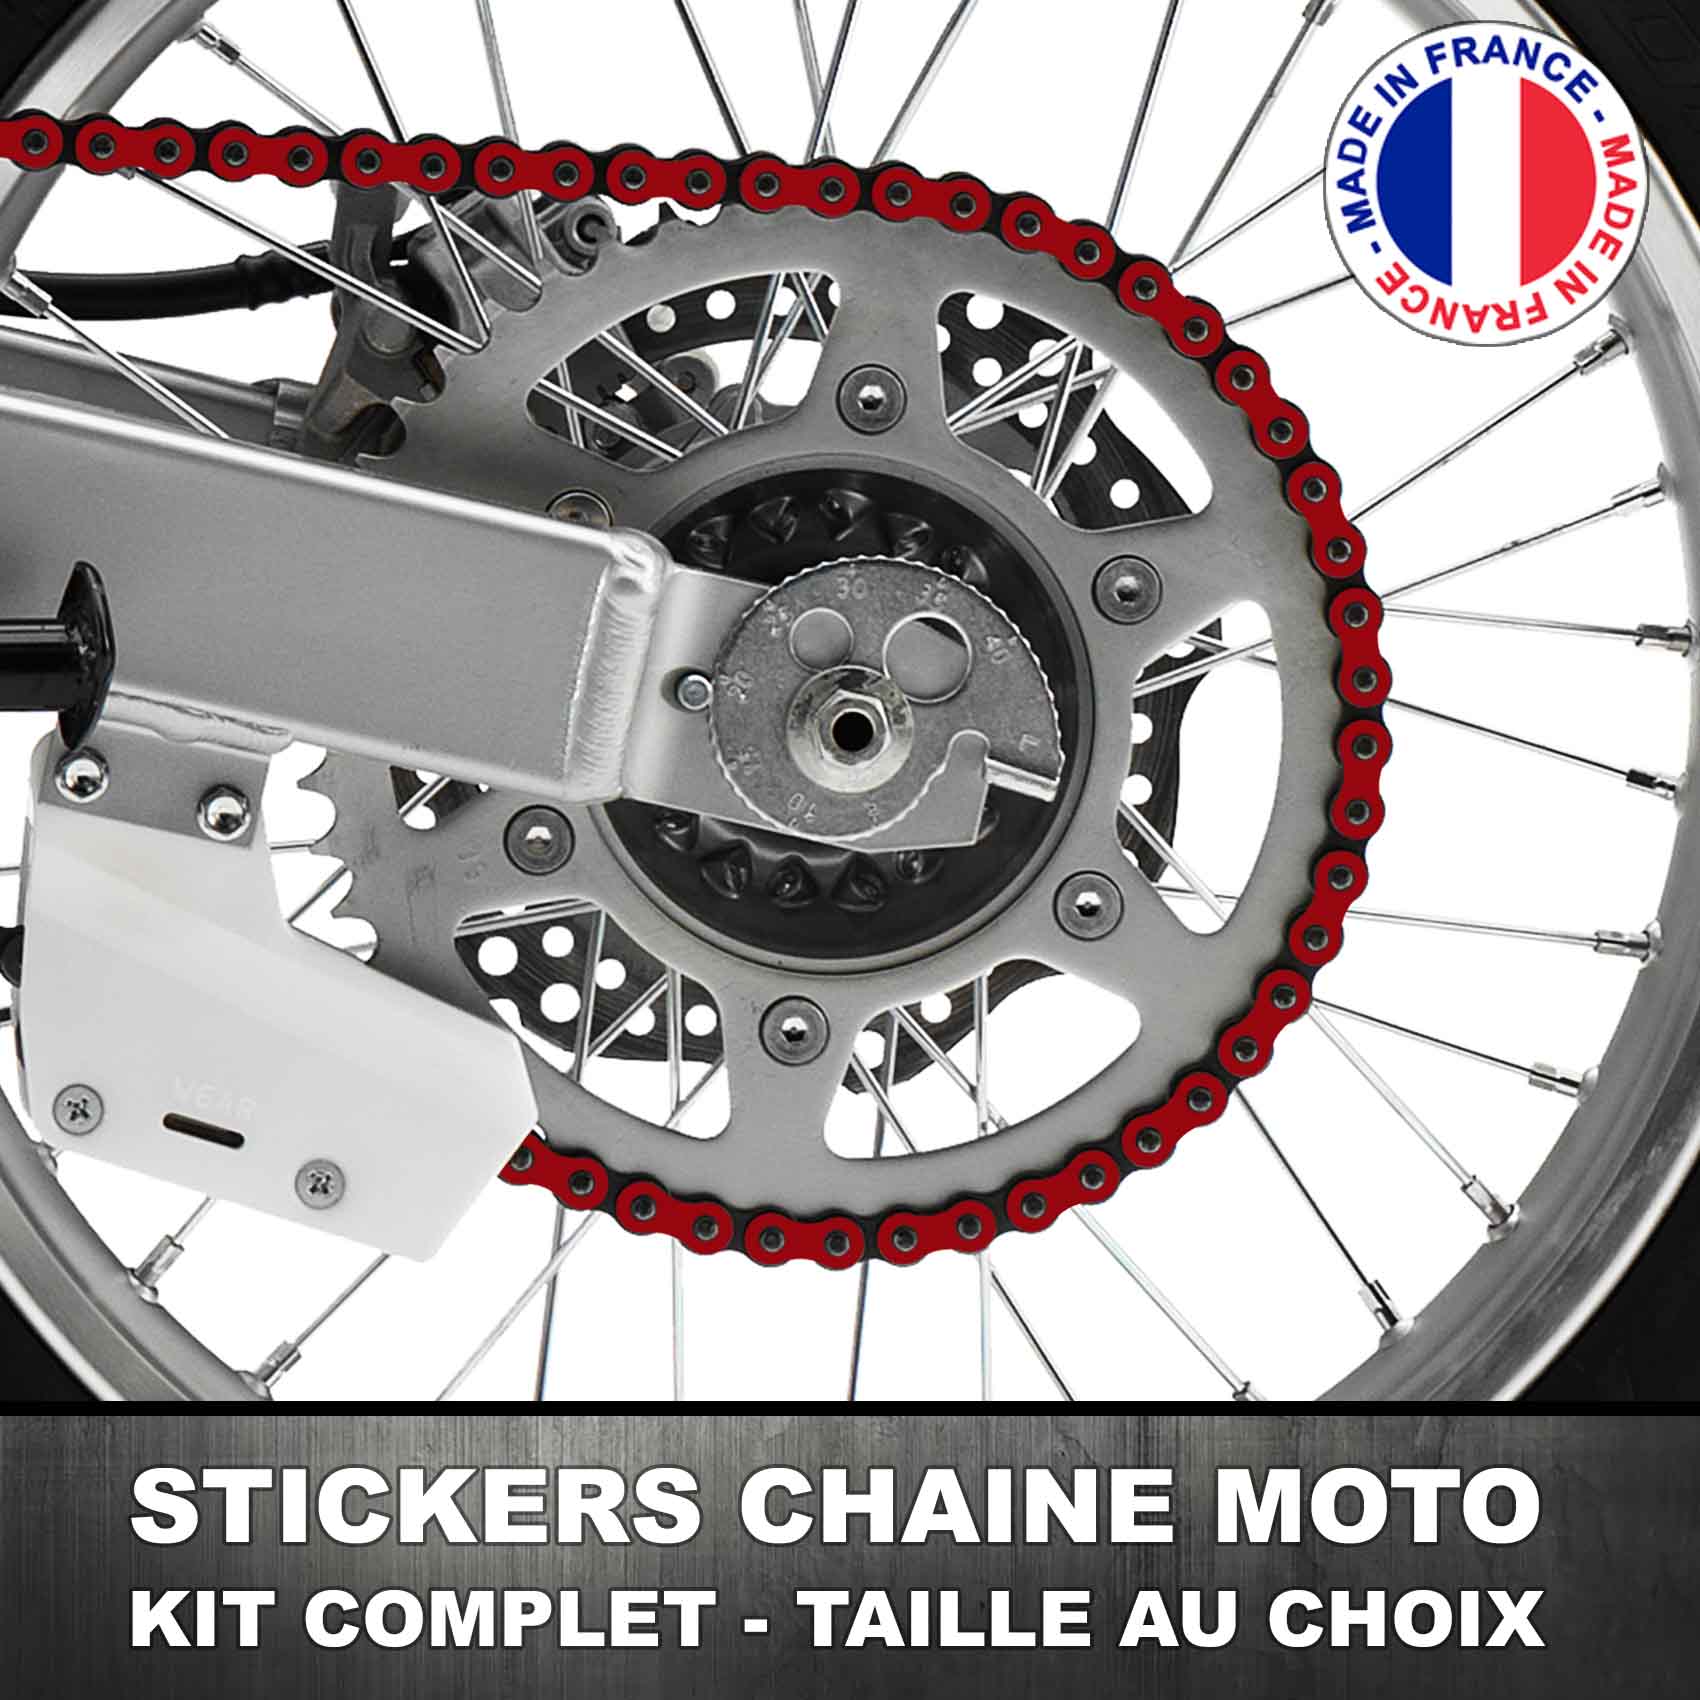 Stickers Chaine Moto Bordeaux